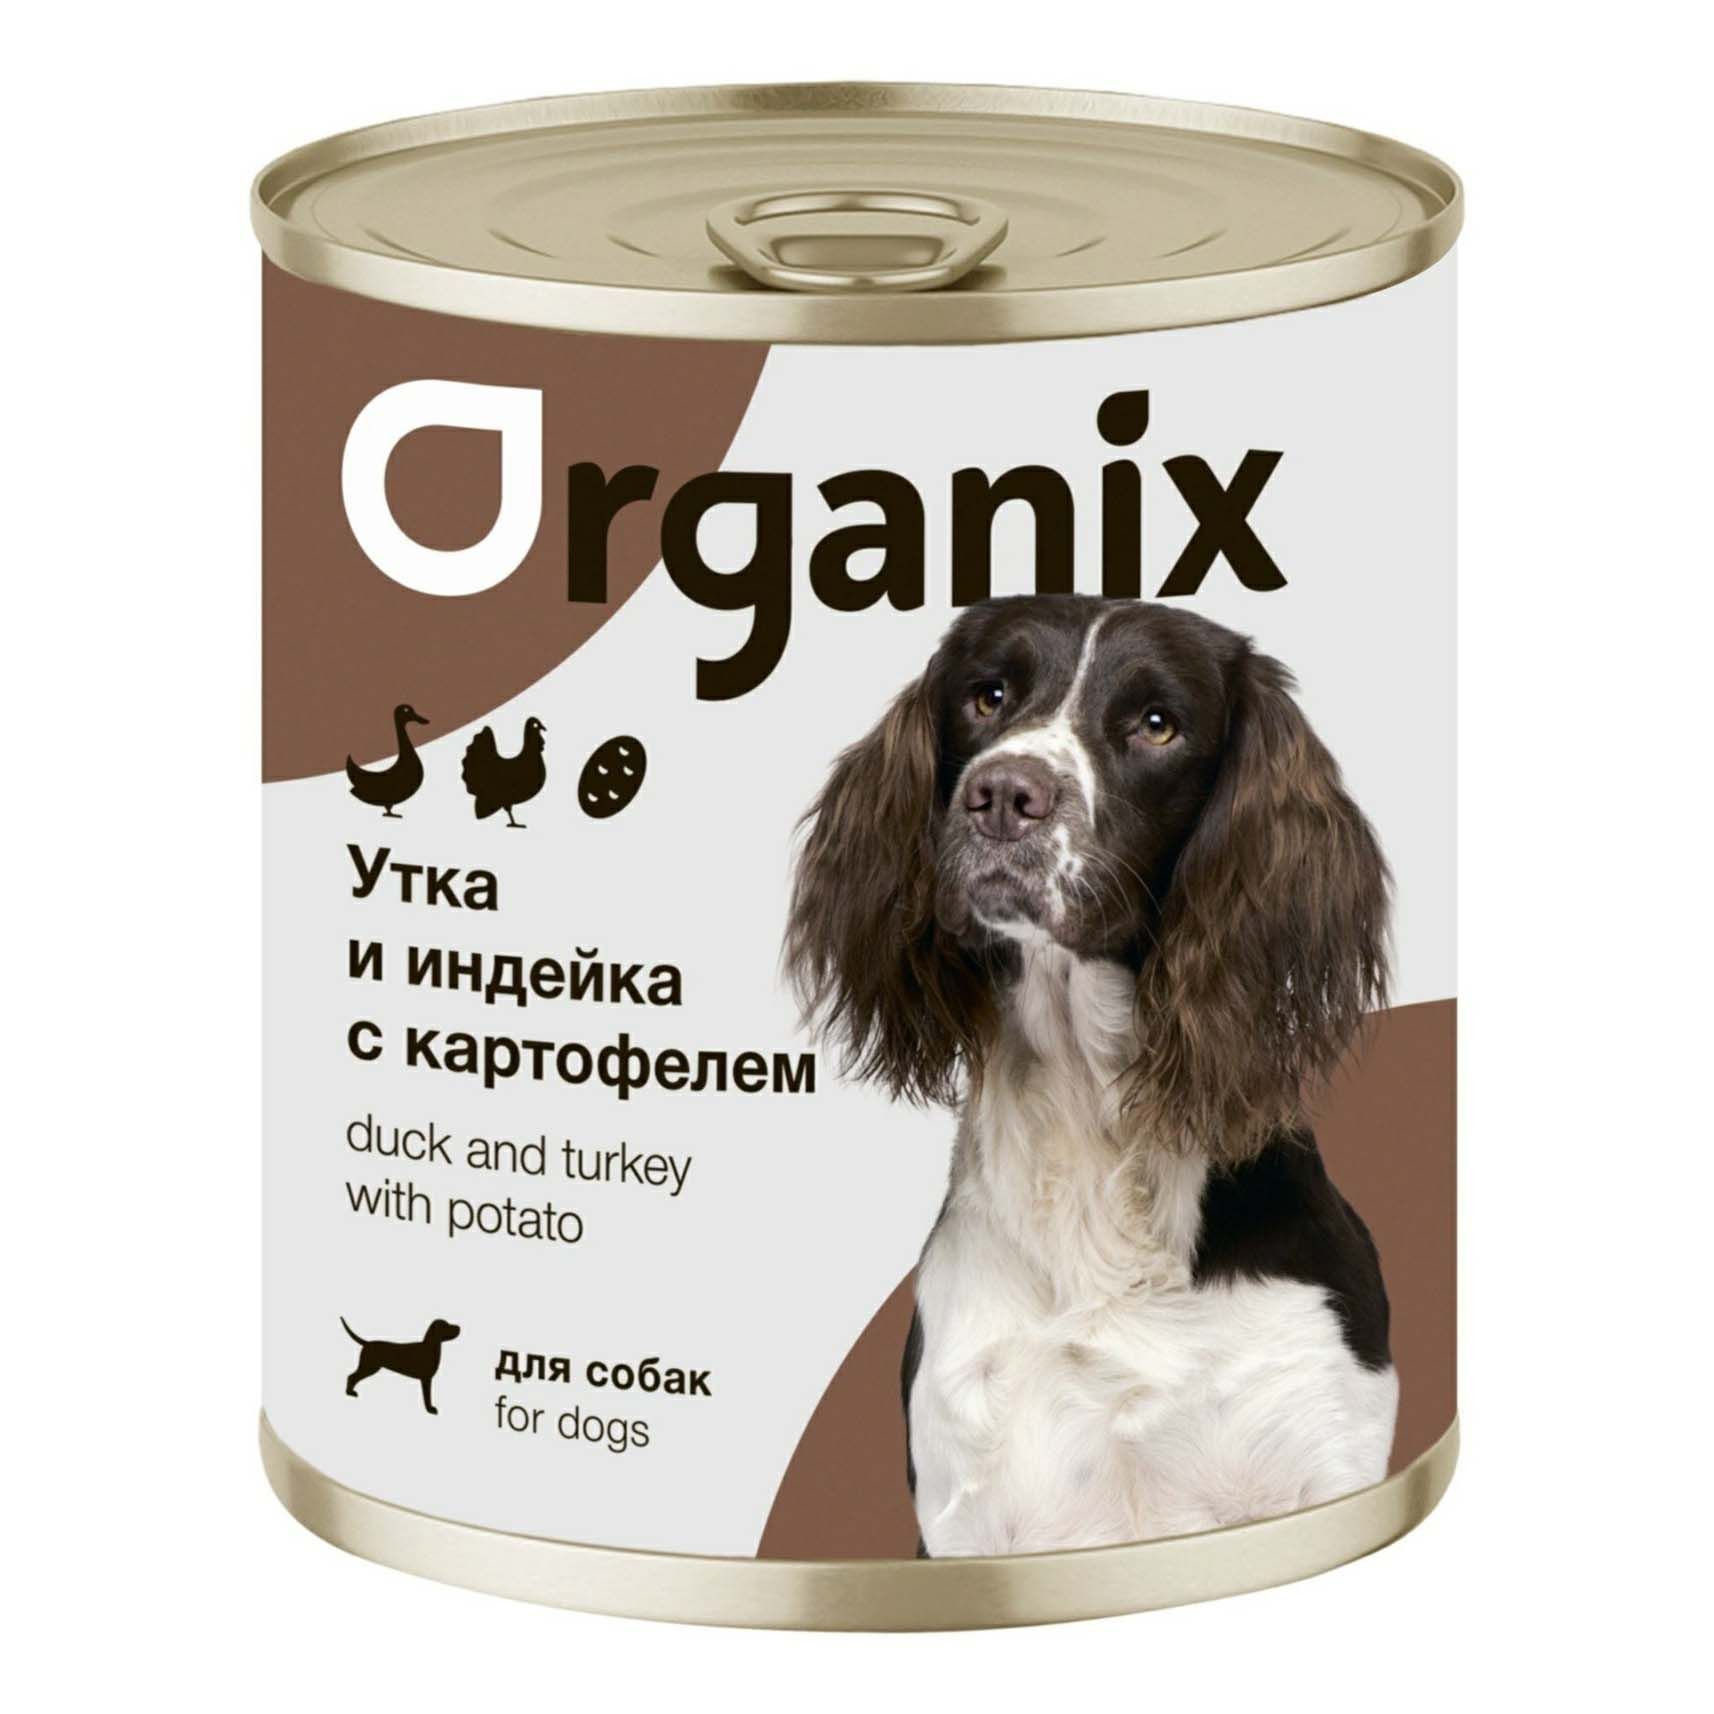 Влажный корм Organix утка-индейка-картофель для собак 400 г